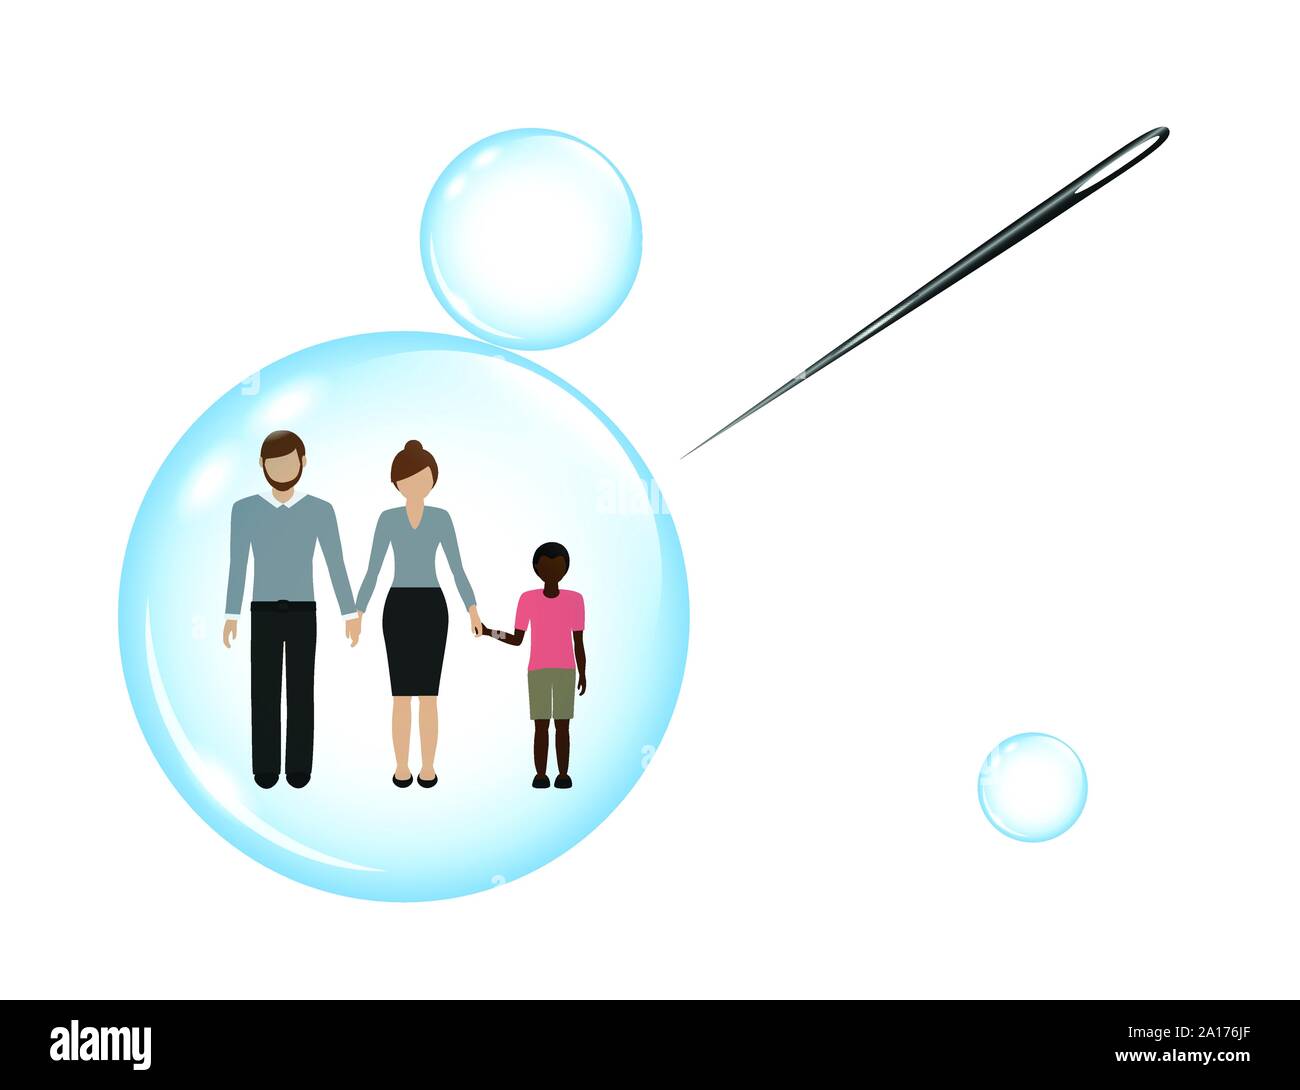 Famiglia con un bambino adottato in una bolla di sapone e un ago illustrazione vettoriale EPS10 Illustrazione Vettoriale